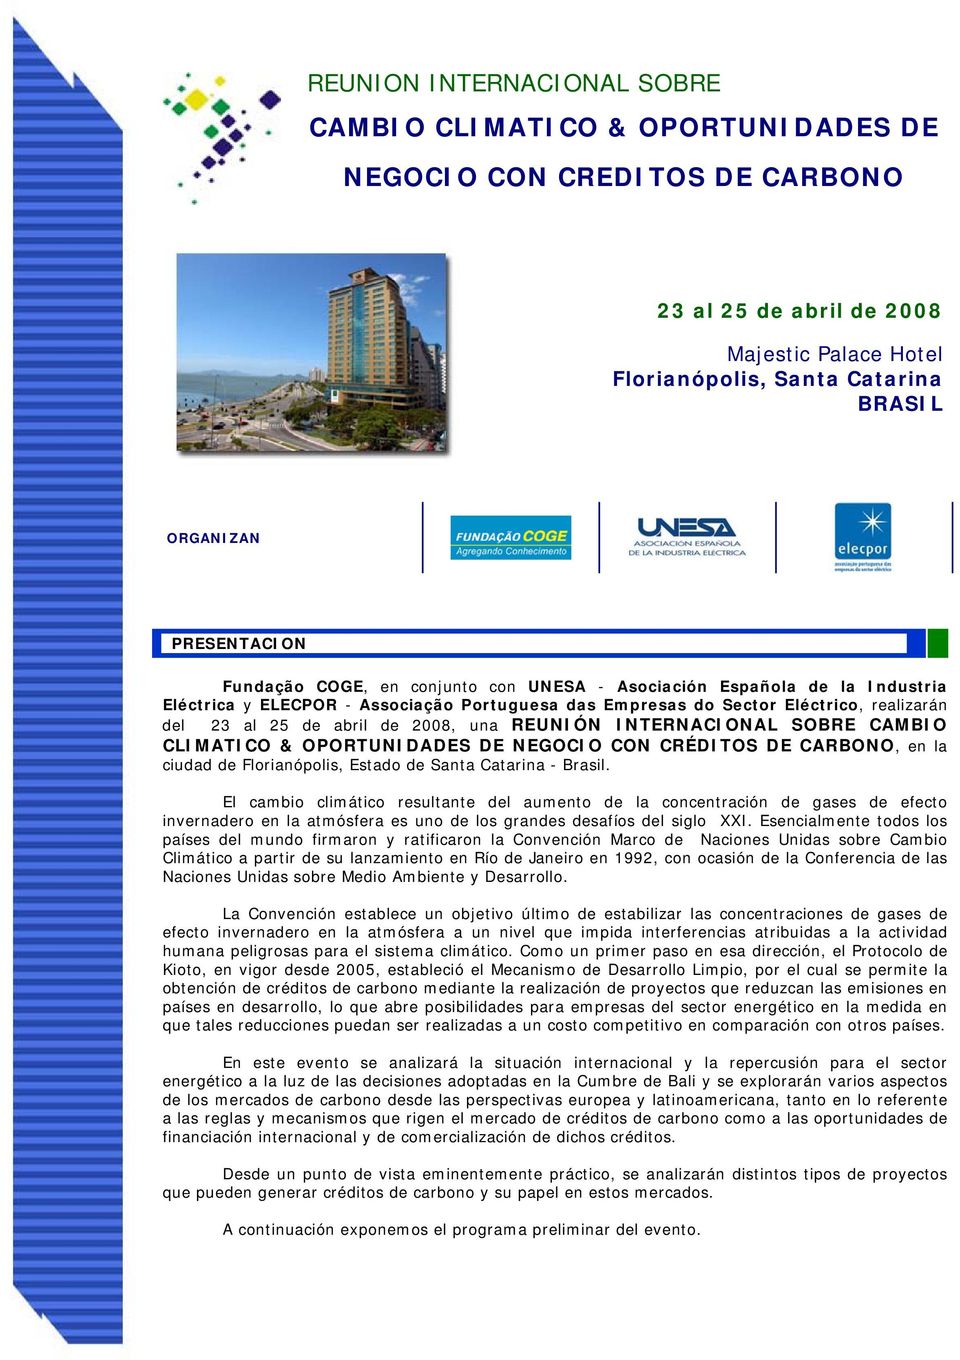 de 2008, una REUNIÓN INTERNACIONAL SOBRE CAMBIO CLIMATICO & OPORTUNIDADES DE NEGOCIO CON CRÉDITOS DE CARBONO, en la ciudad de Florianópolis, Estado de Santa Catarina - Brasil.